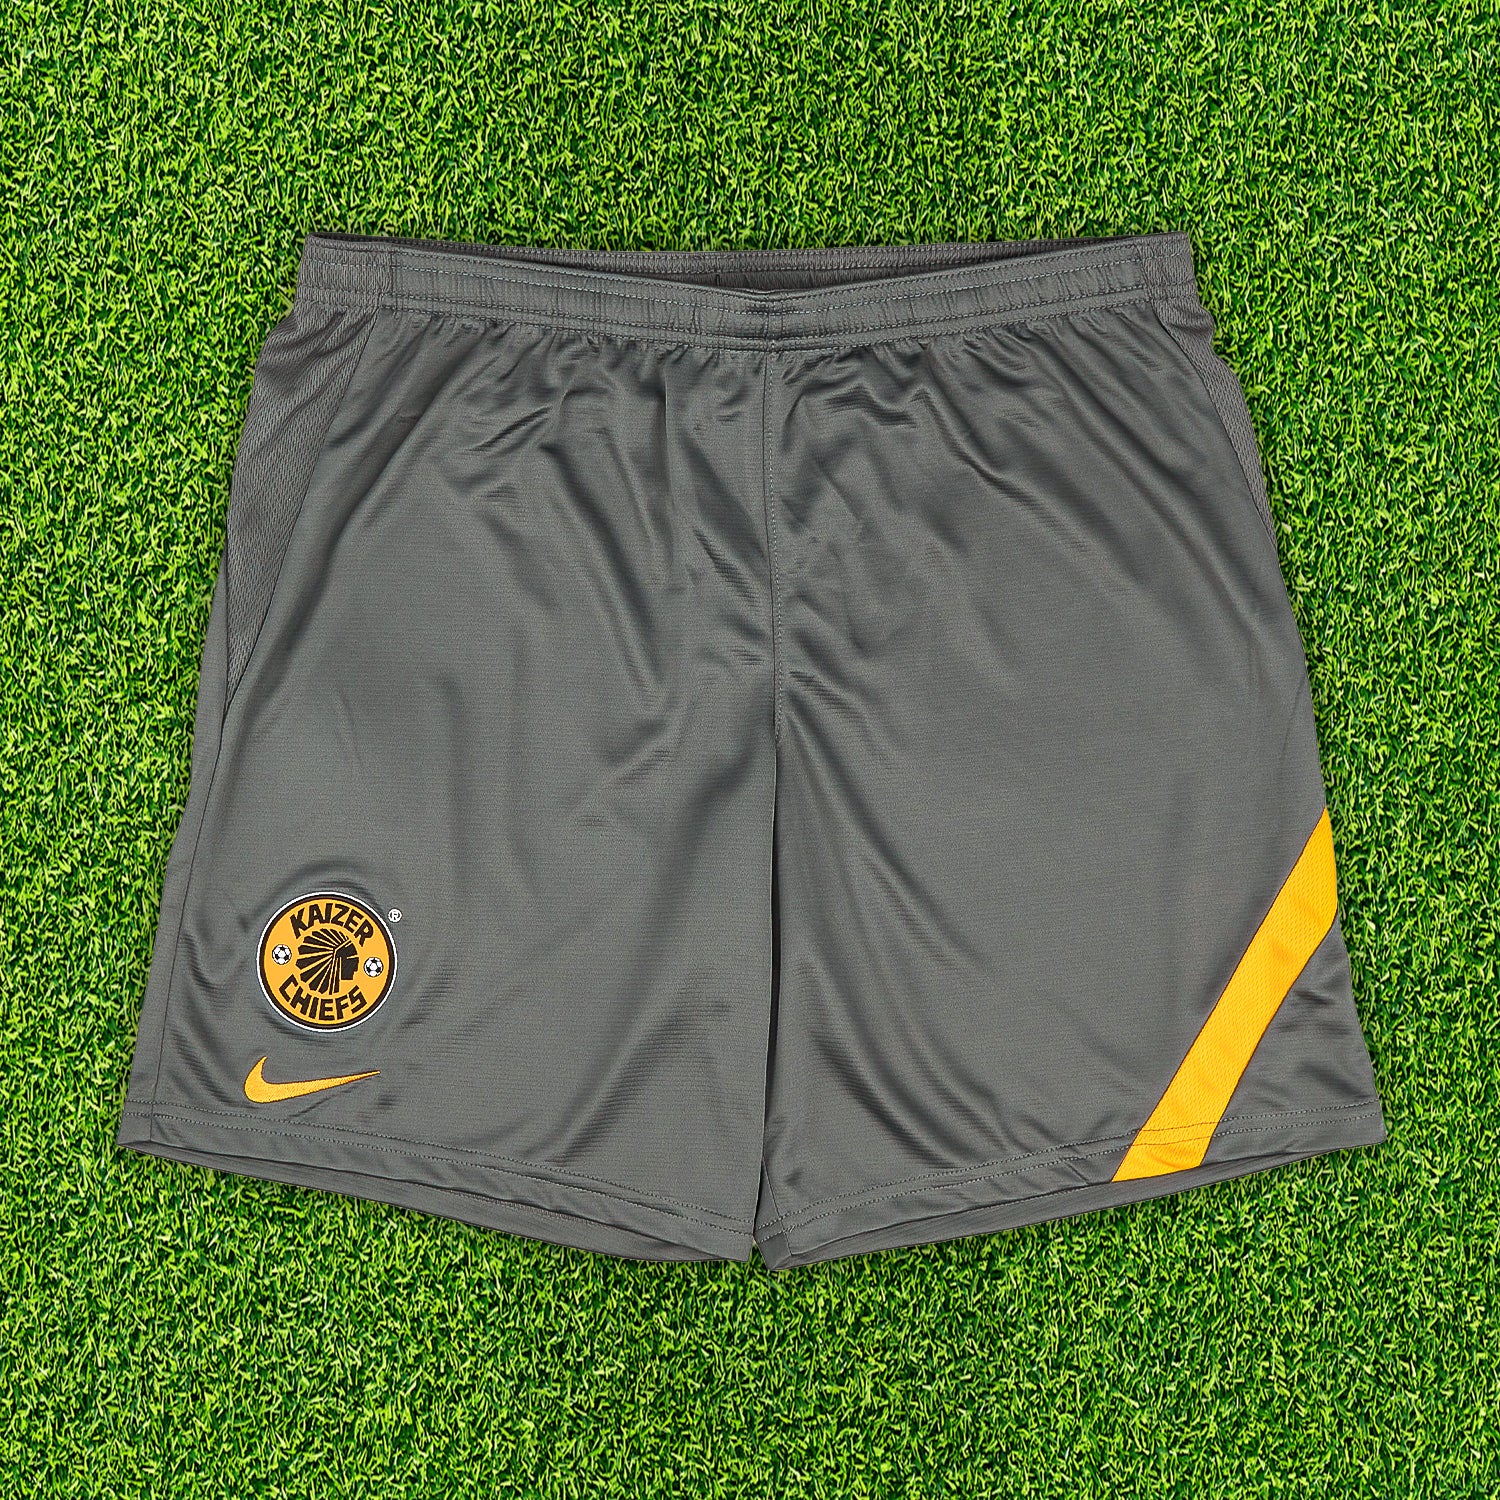 Football shorts Mystery Box